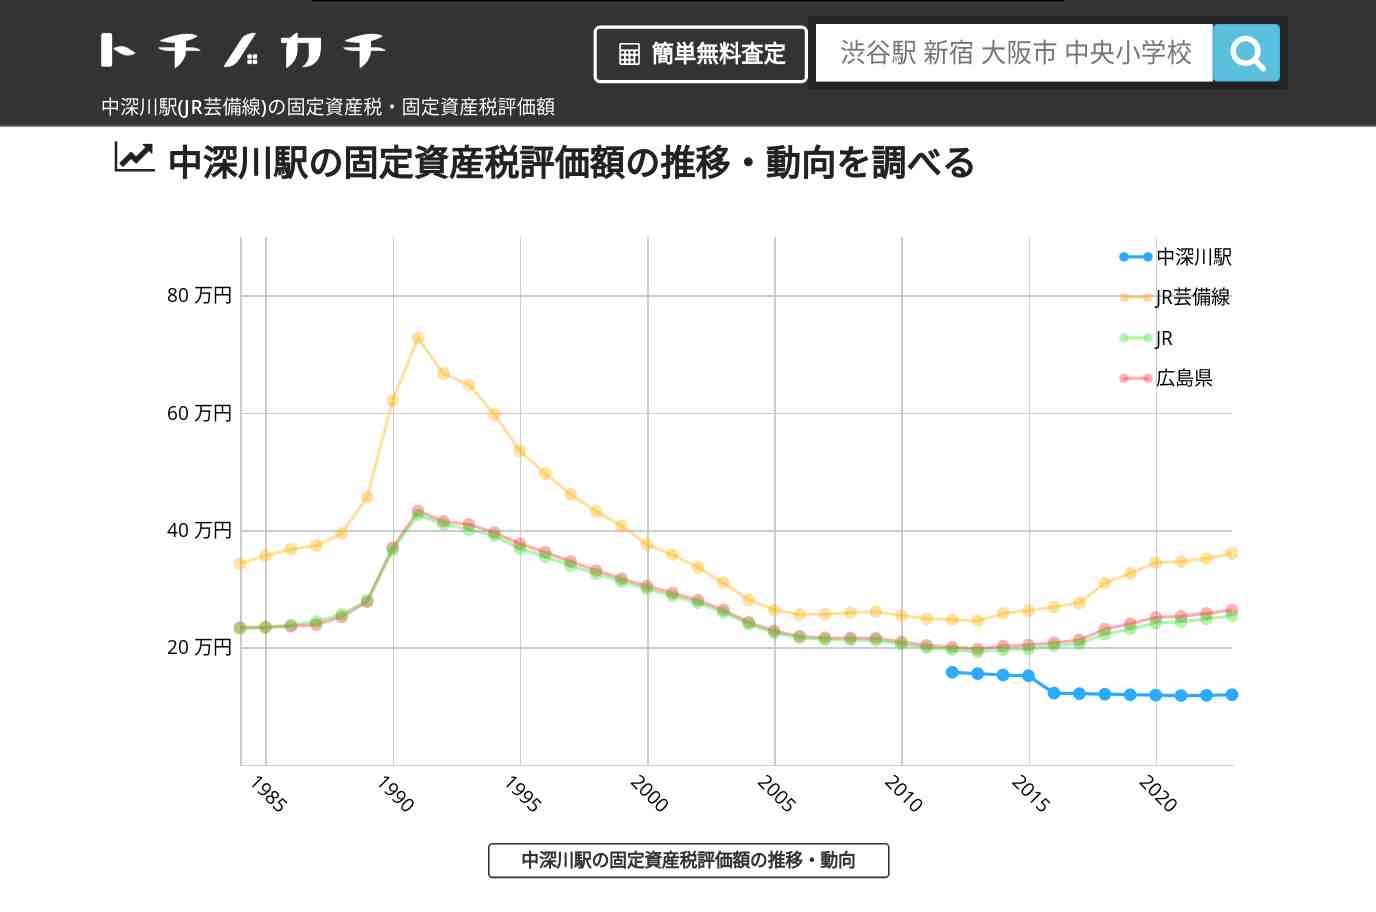 中深川駅(JR芸備線)の固定資産税・固定資産税評価額 | トチノカチ